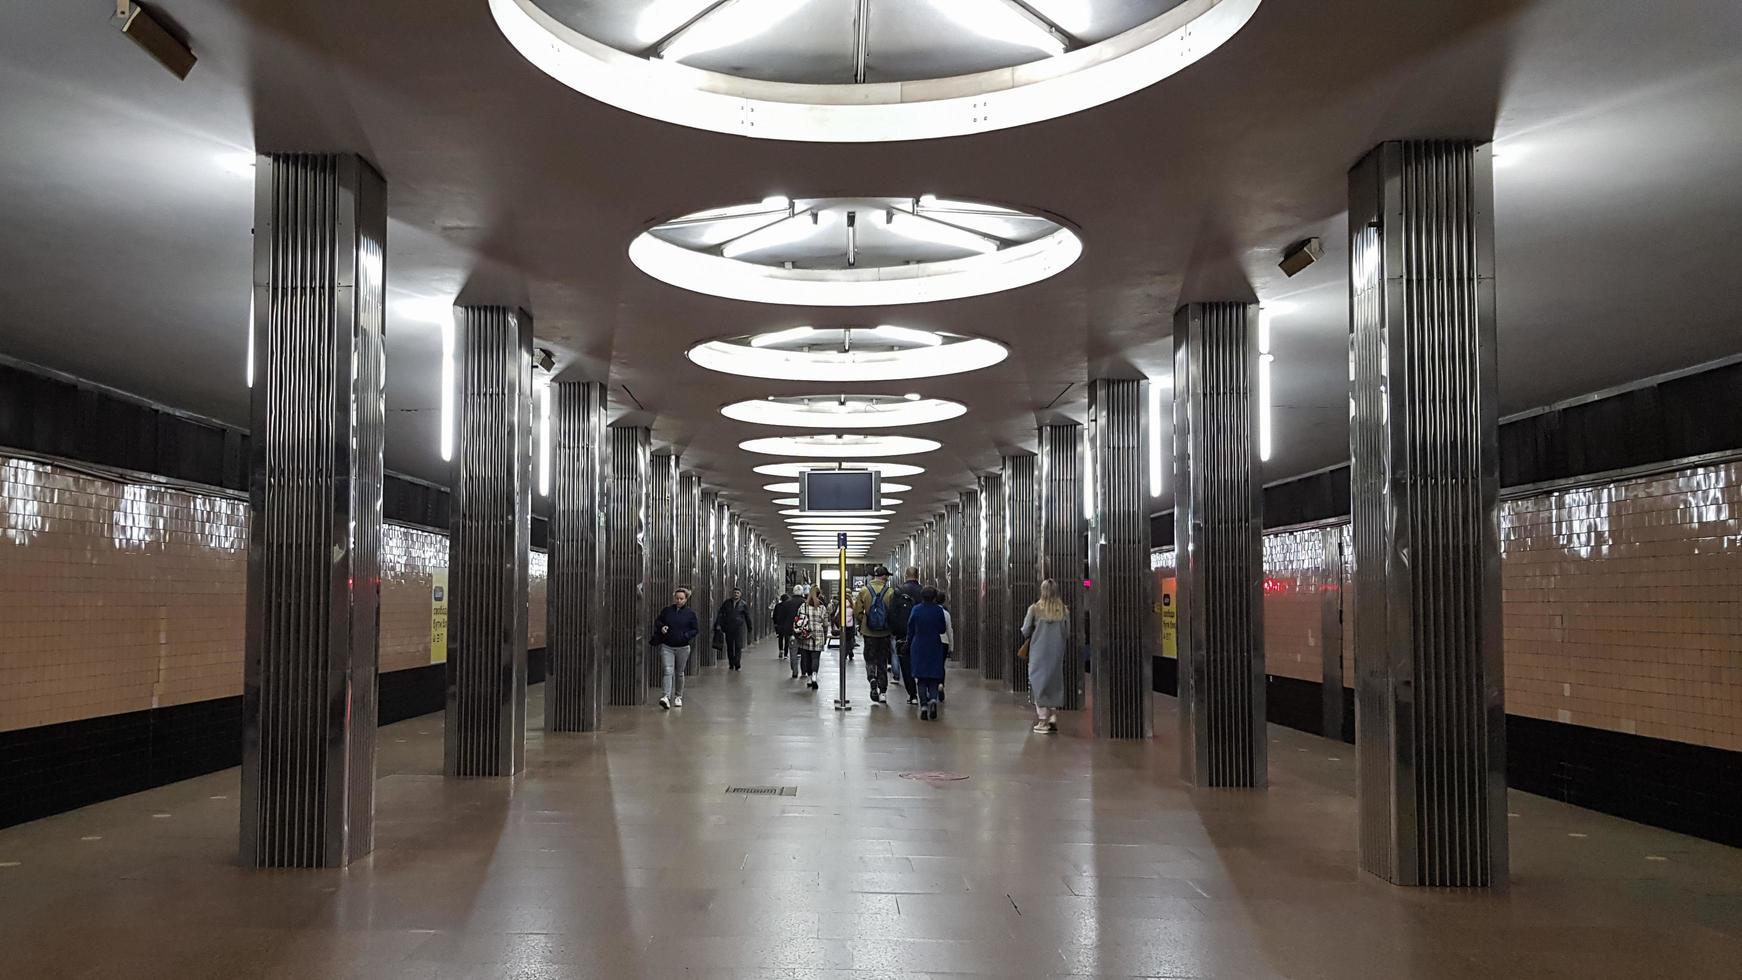 ukraina, kiev - 25 maj 2020. tunnelbanestation på den röda linjen i Kievs tunnelbana. tom station utan folk foto